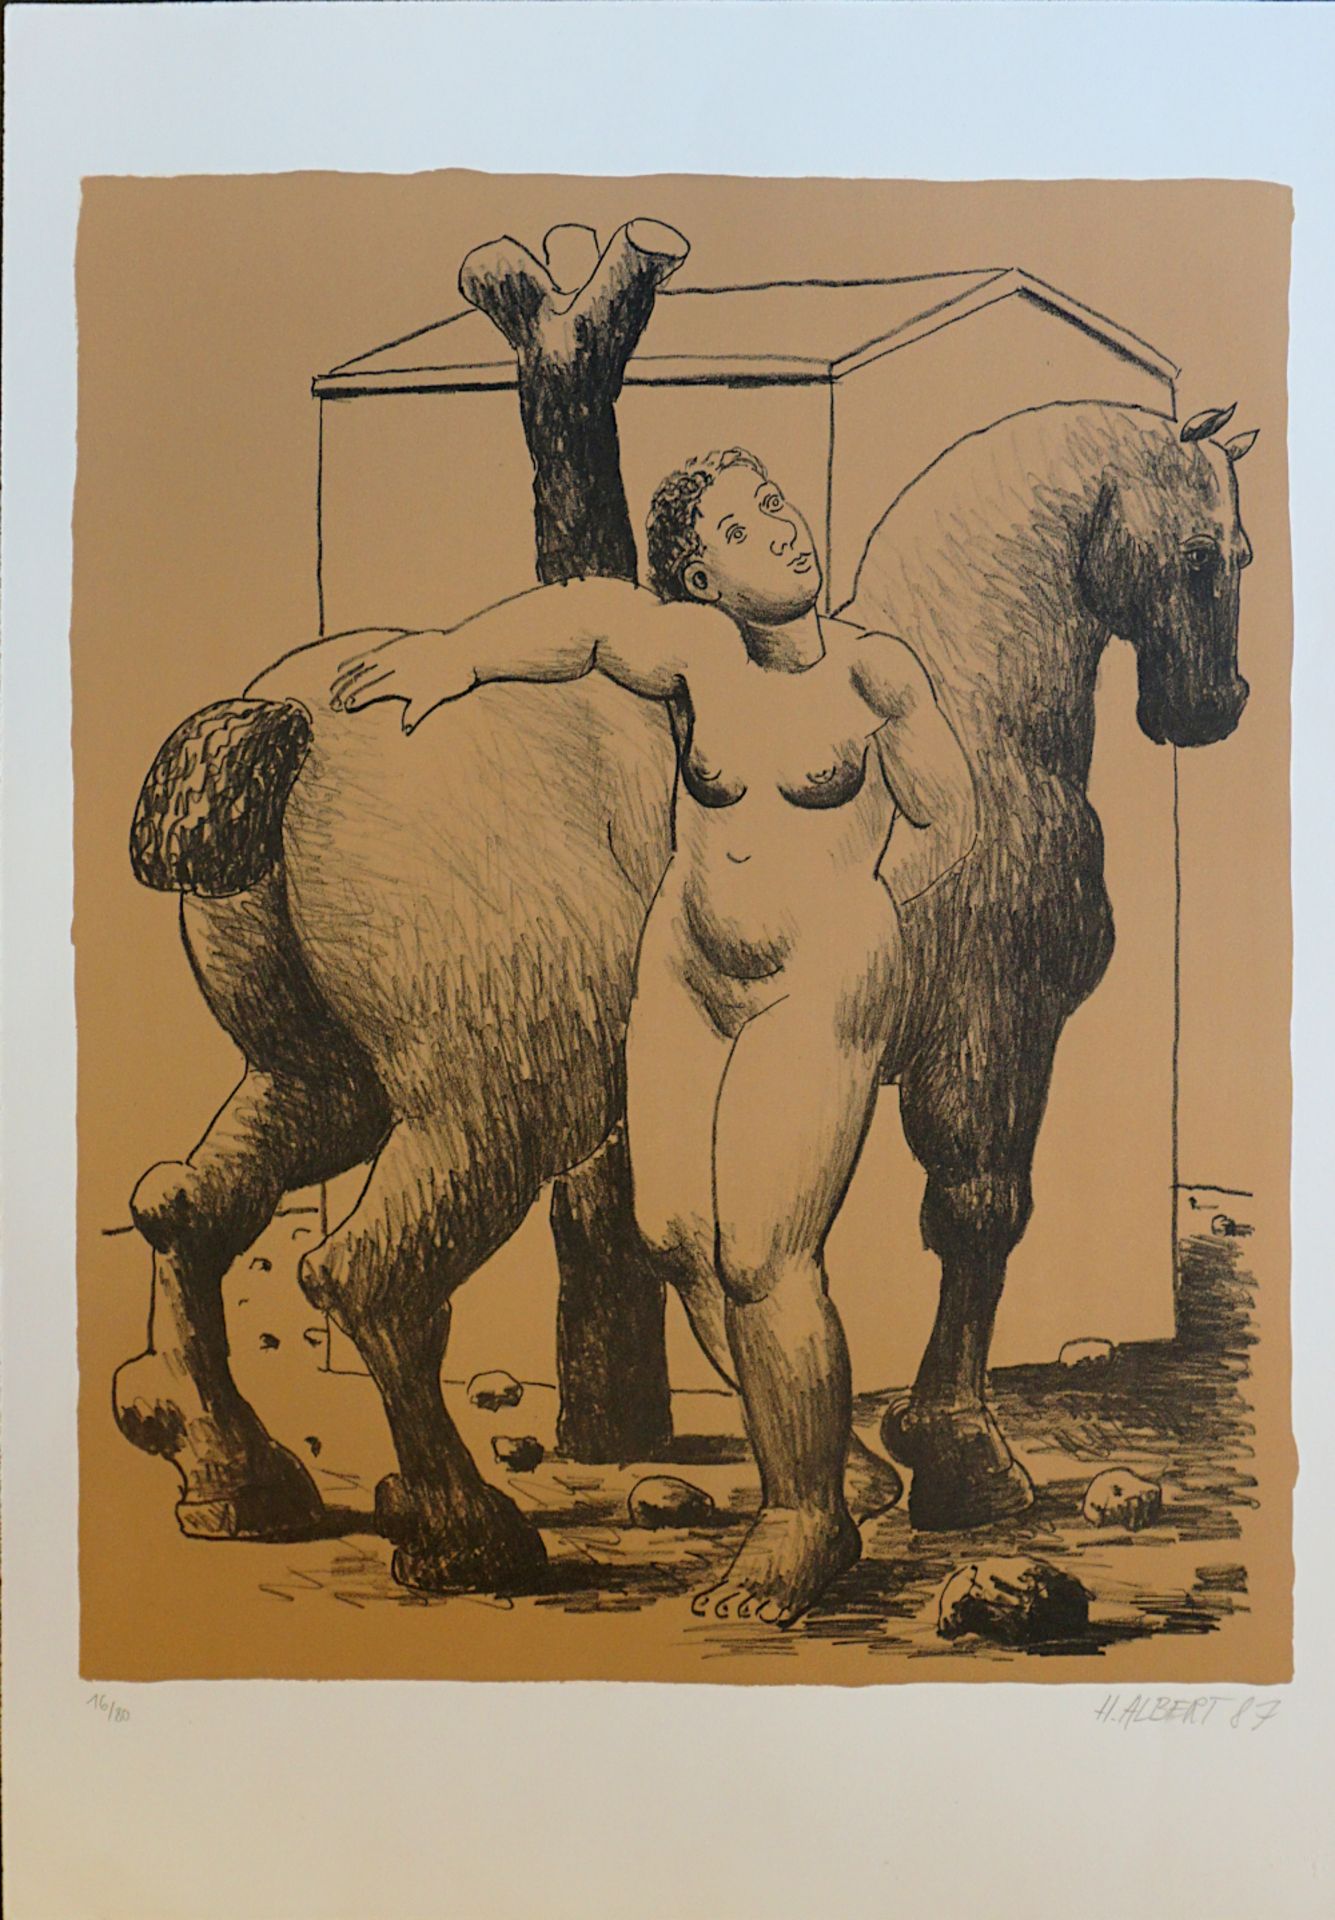 1 Farblithografie "Weiblicher Akt mit Pferd", R.u. bleistiftsign. H. ALBERT